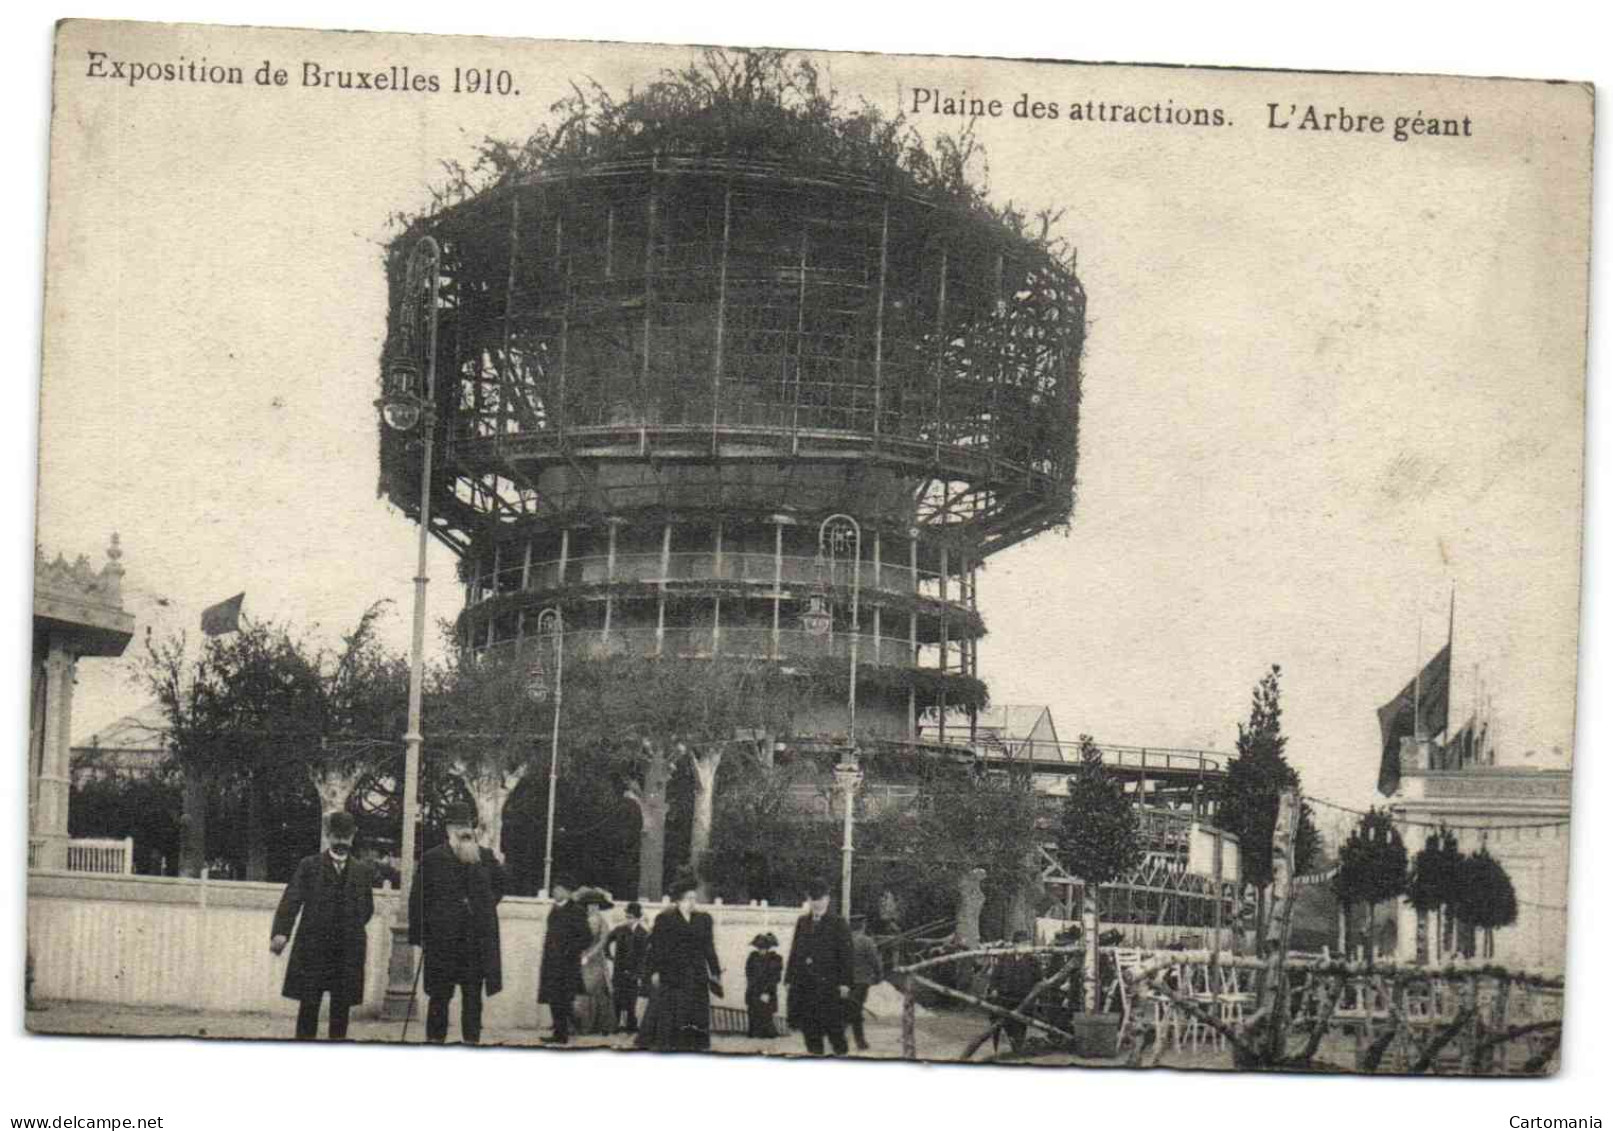 Exposition De Bruxelles 1910 - Plaine Des Attractions - L'Arbre Géant - Expositions Universelles